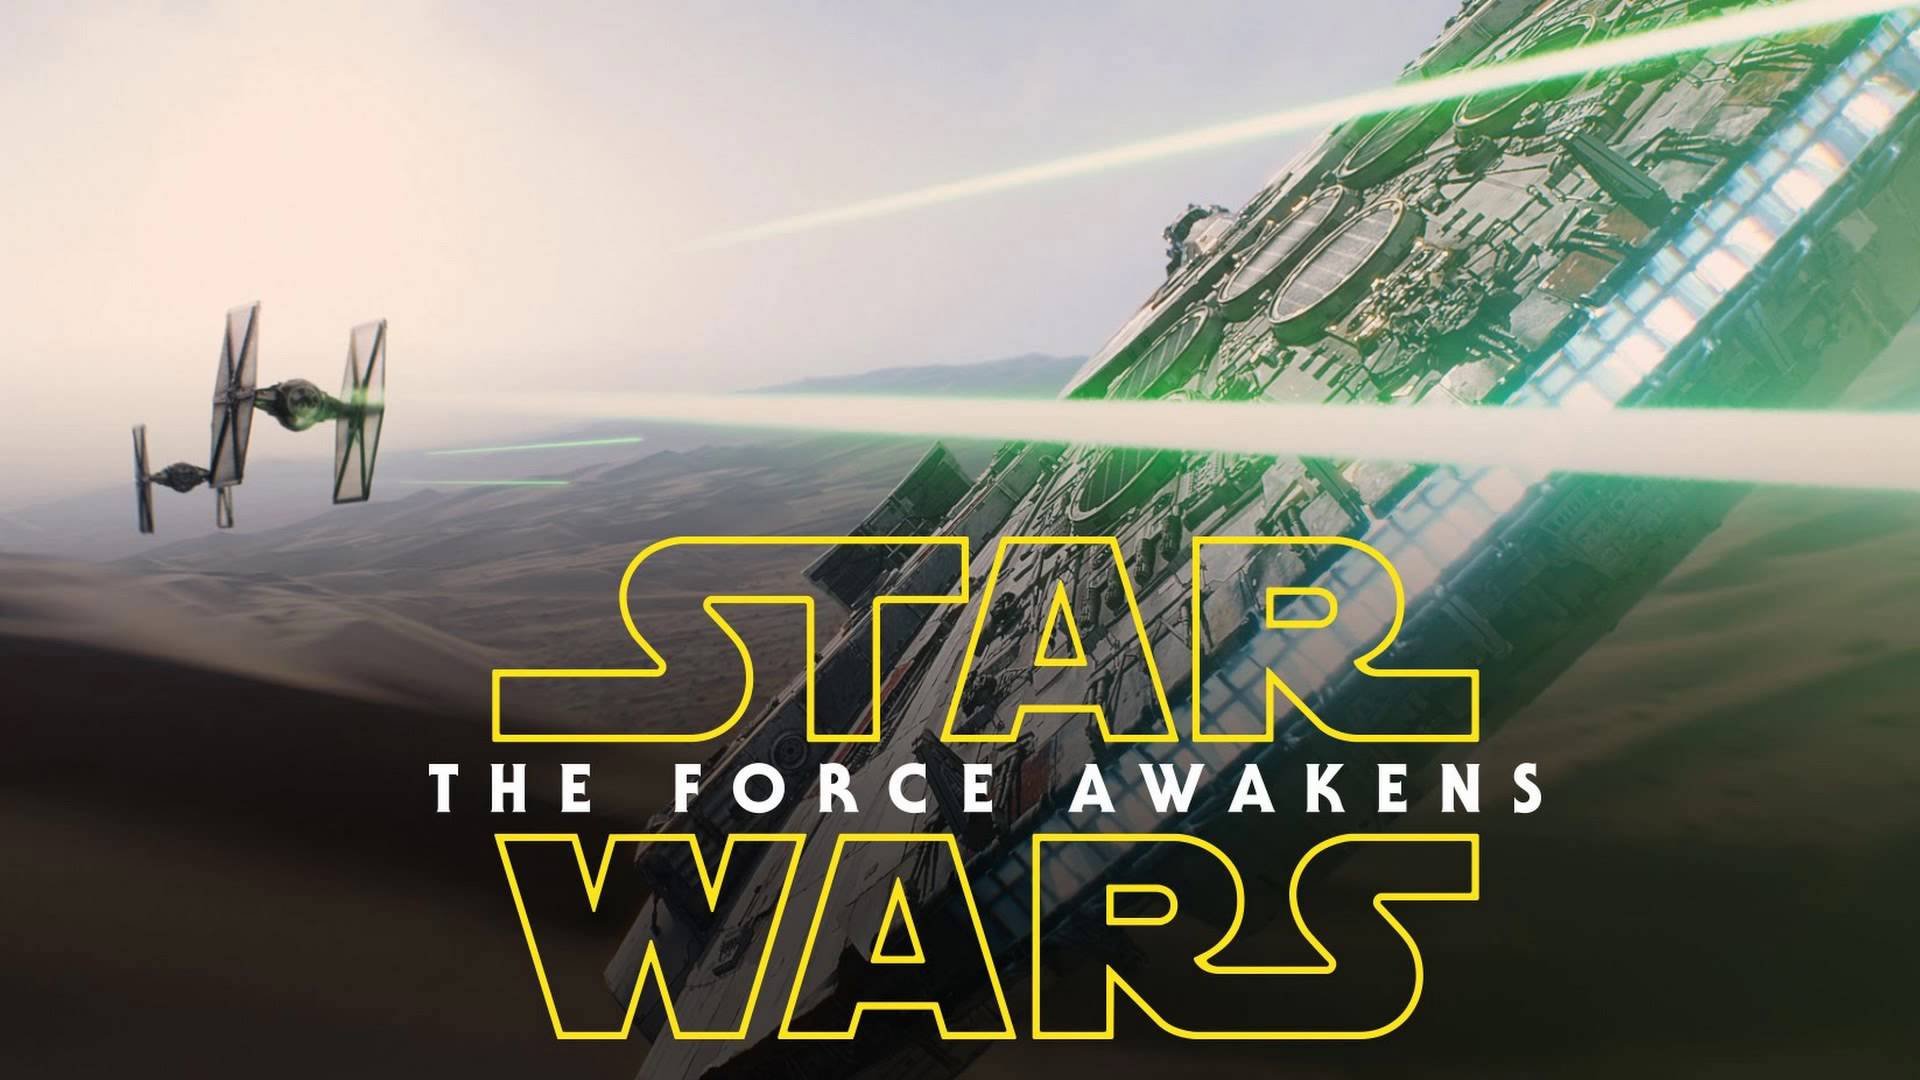 the force awakens full movie online gen video